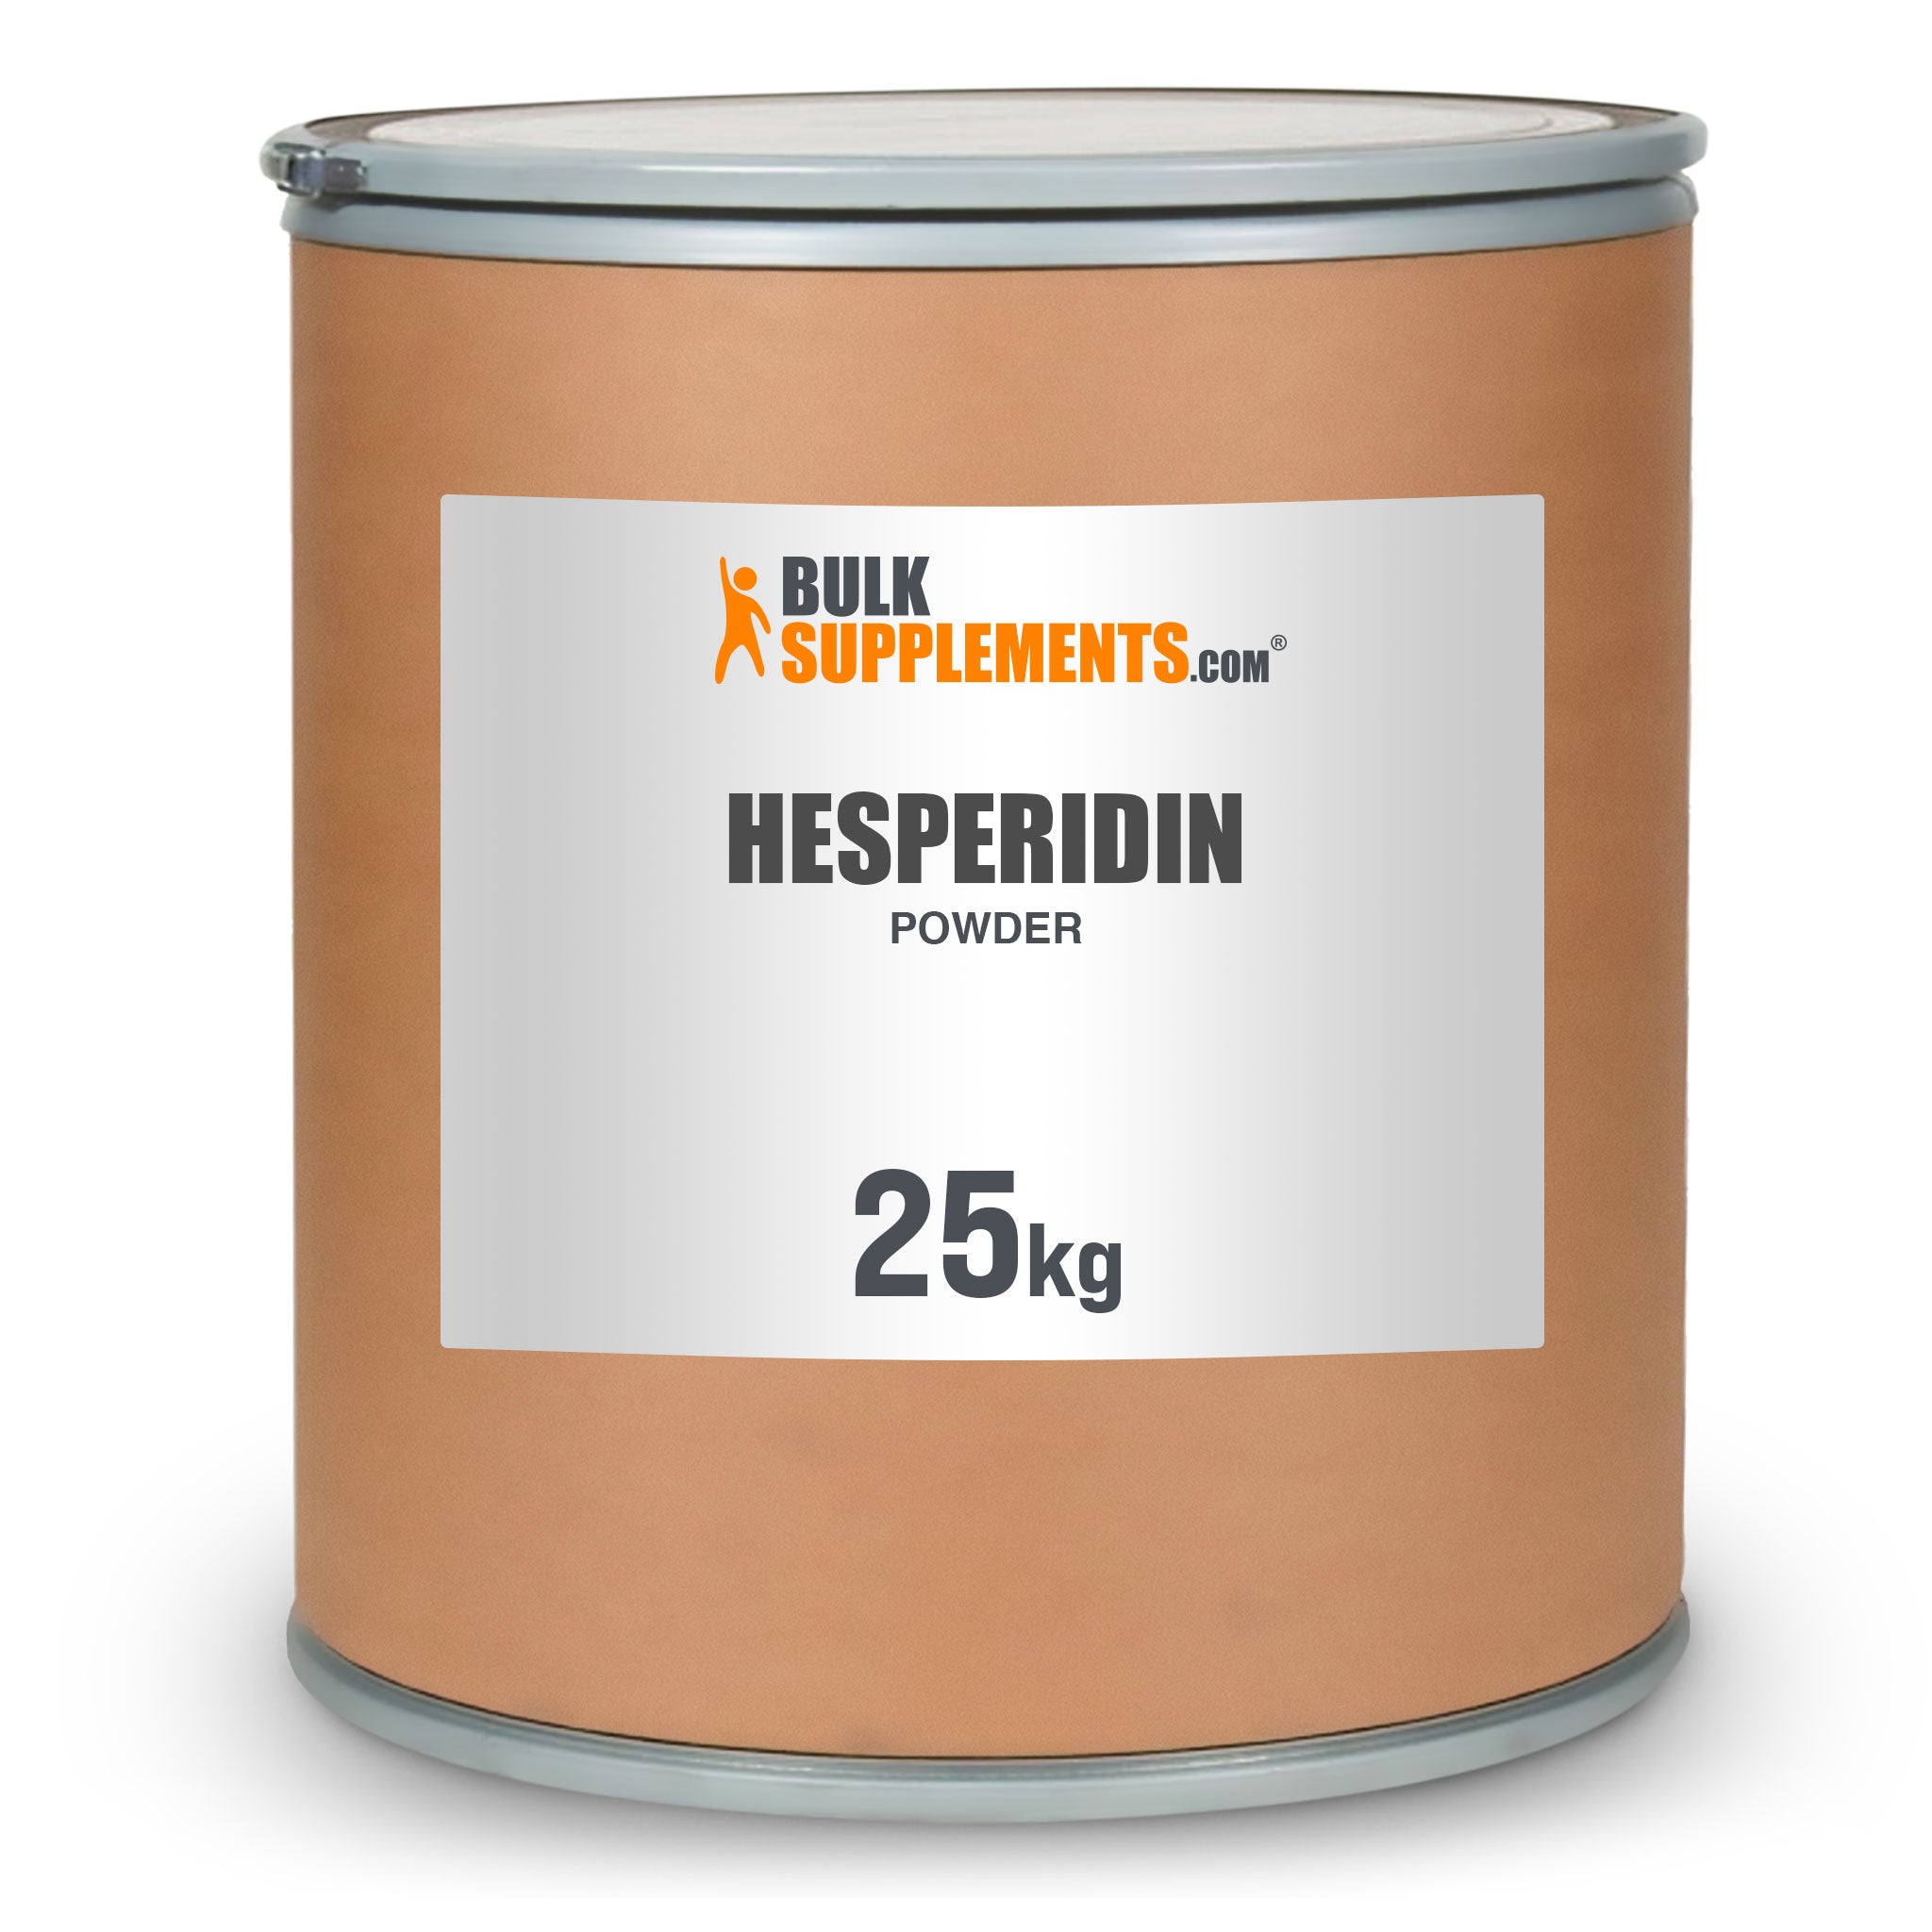 Hesperidin powder 25kg canister